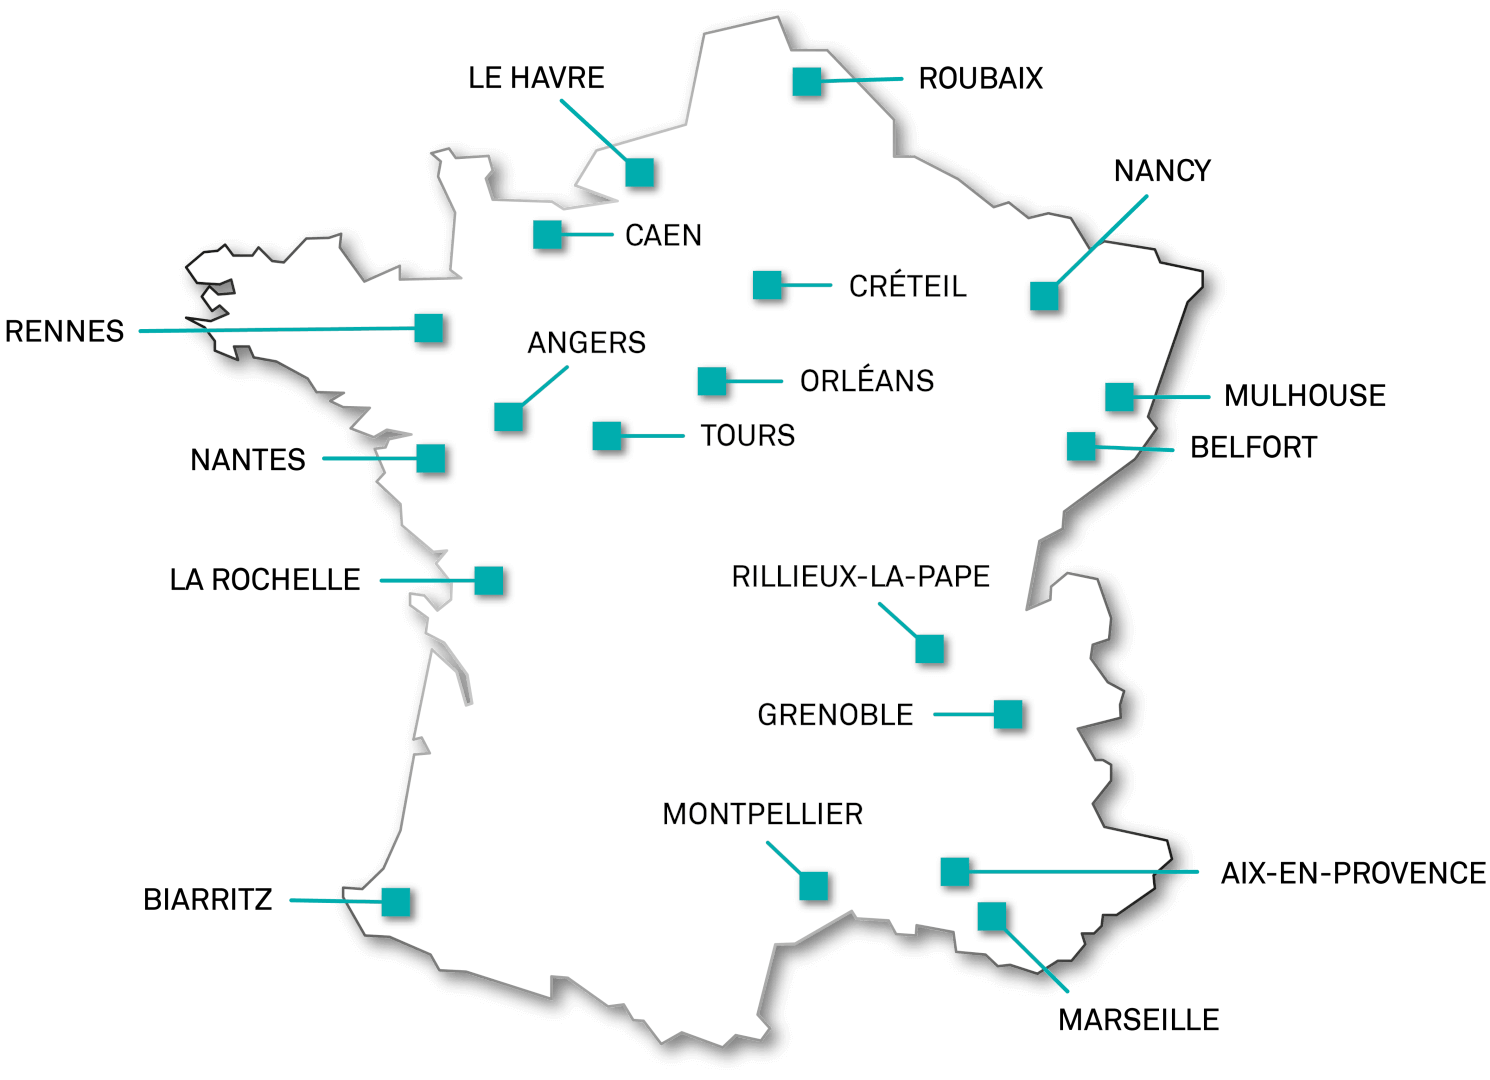 Centres Chorégraphiques Nationaux de France